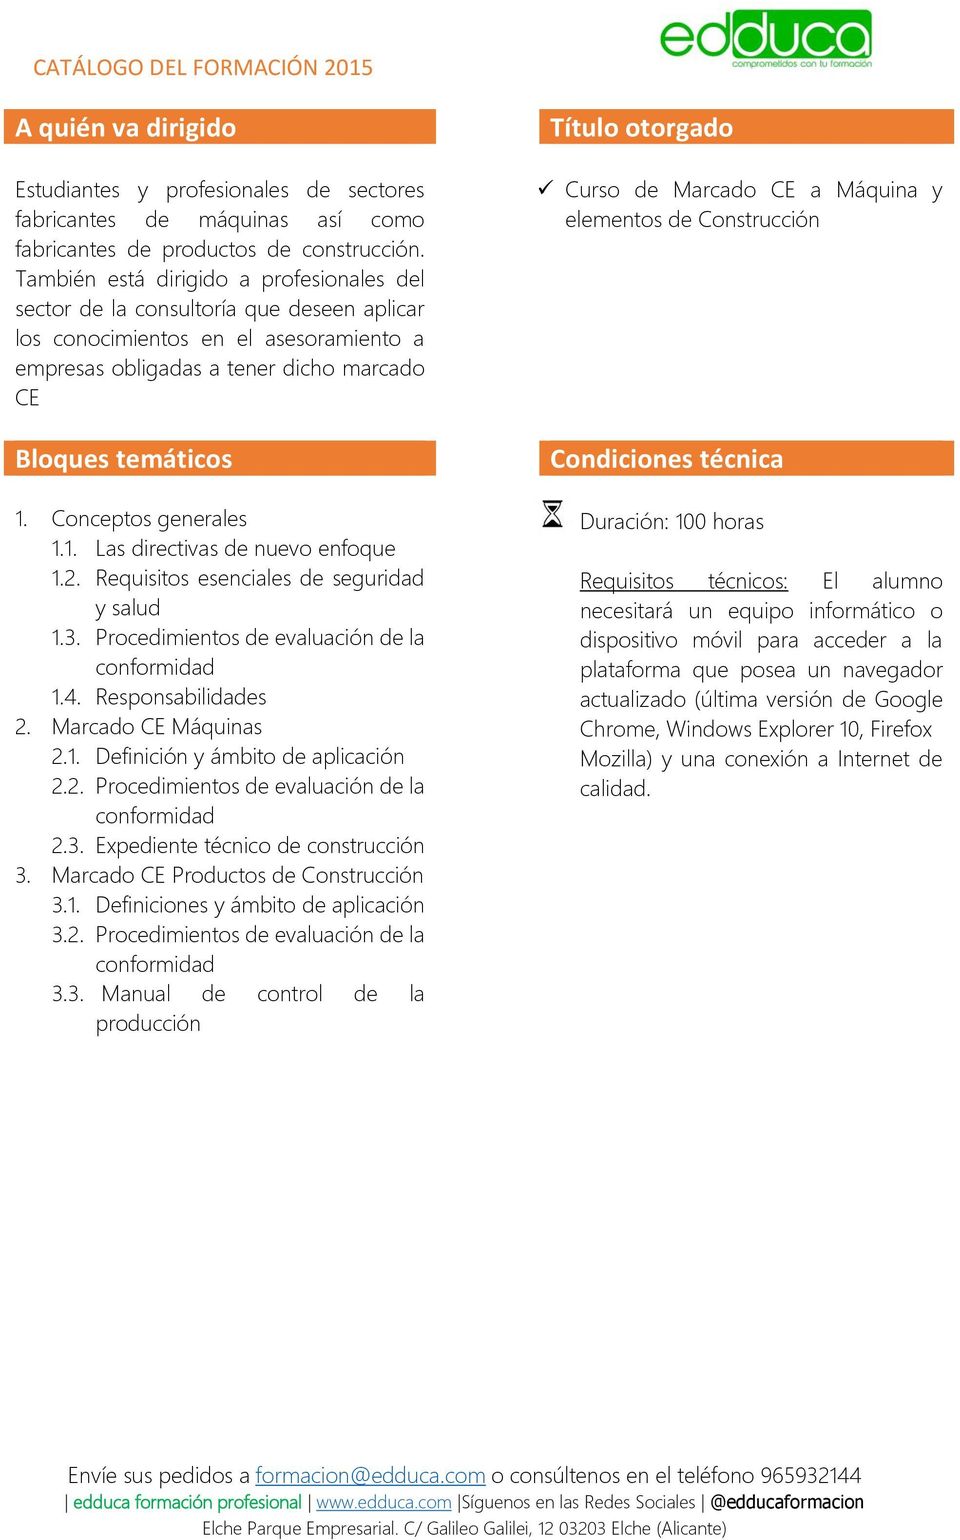 Conceptos generales 1.1. Las directivas de nuevo enfoque 1.2. Requisitos esenciales de seguridad y salud 1.3. Procedimientos de evaluación de la conformidad 1.4. Responsabilidades 2.